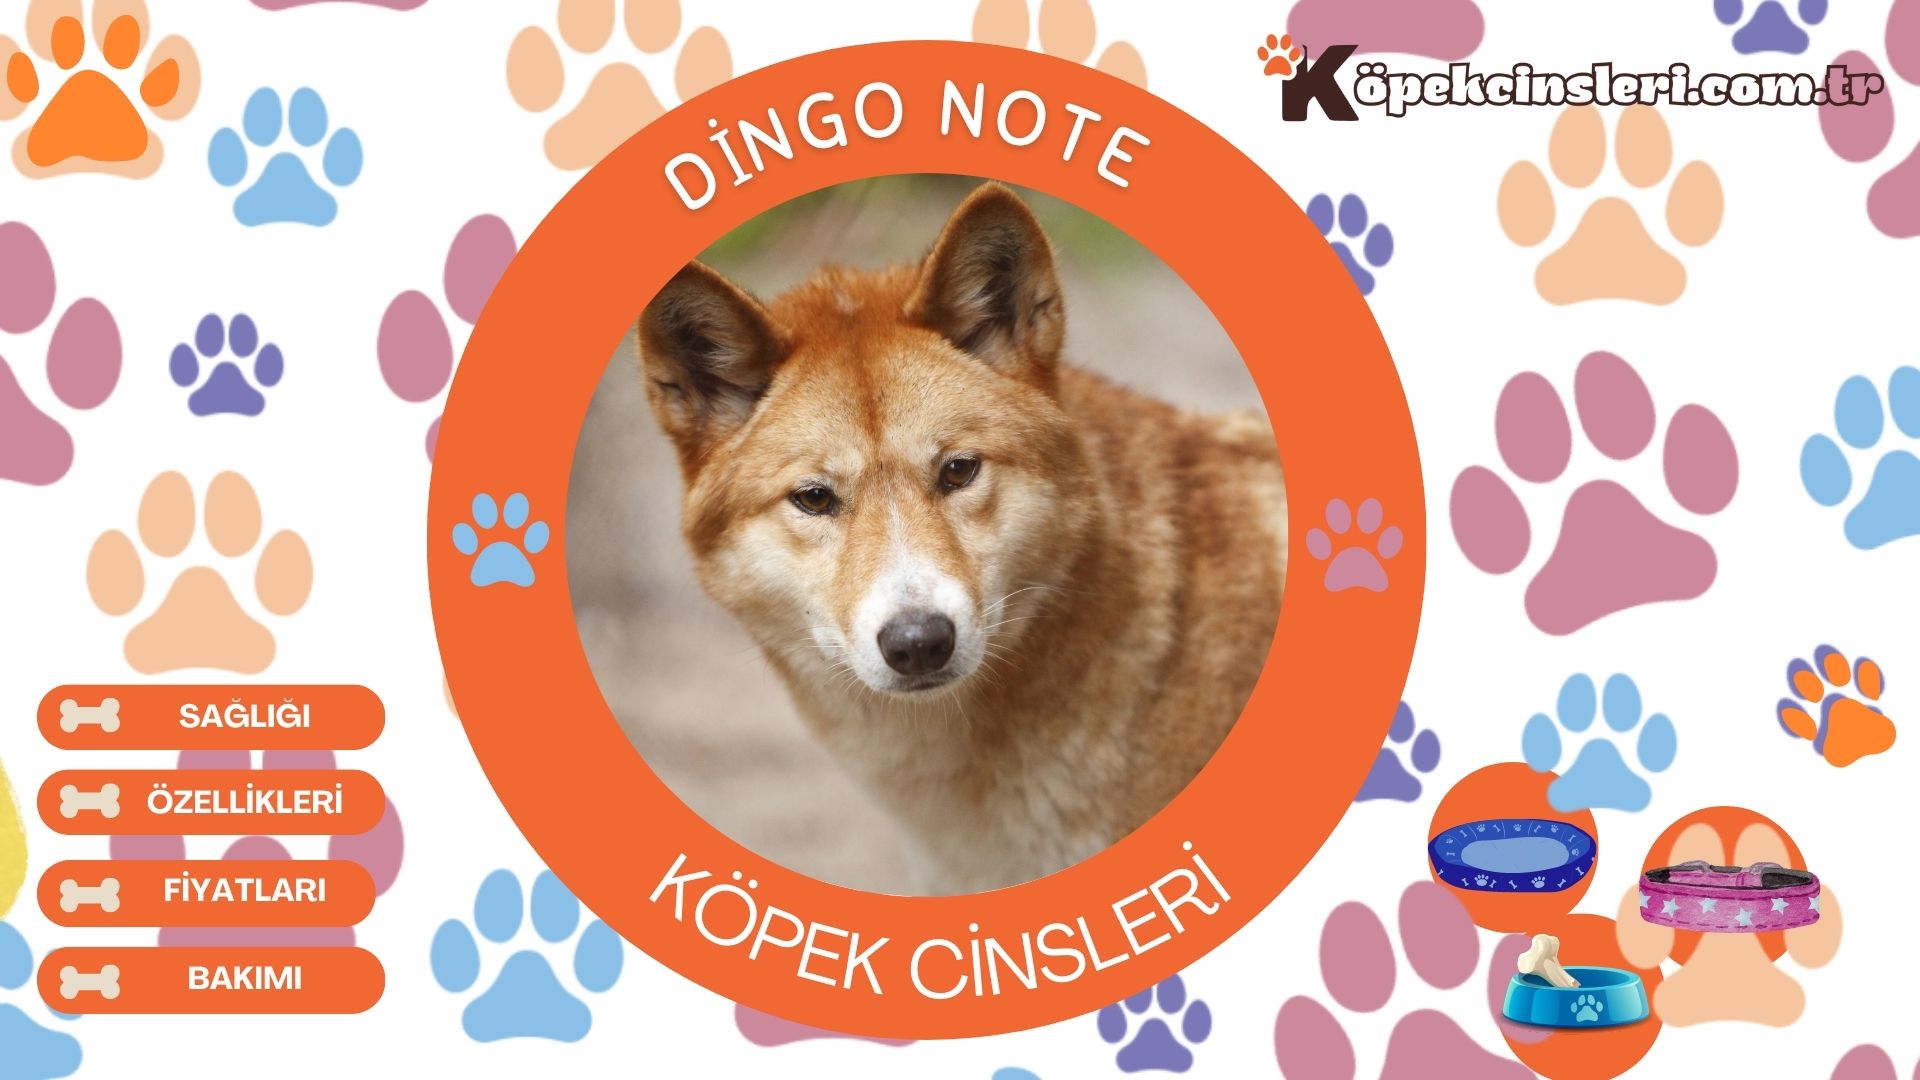 Dingo Note